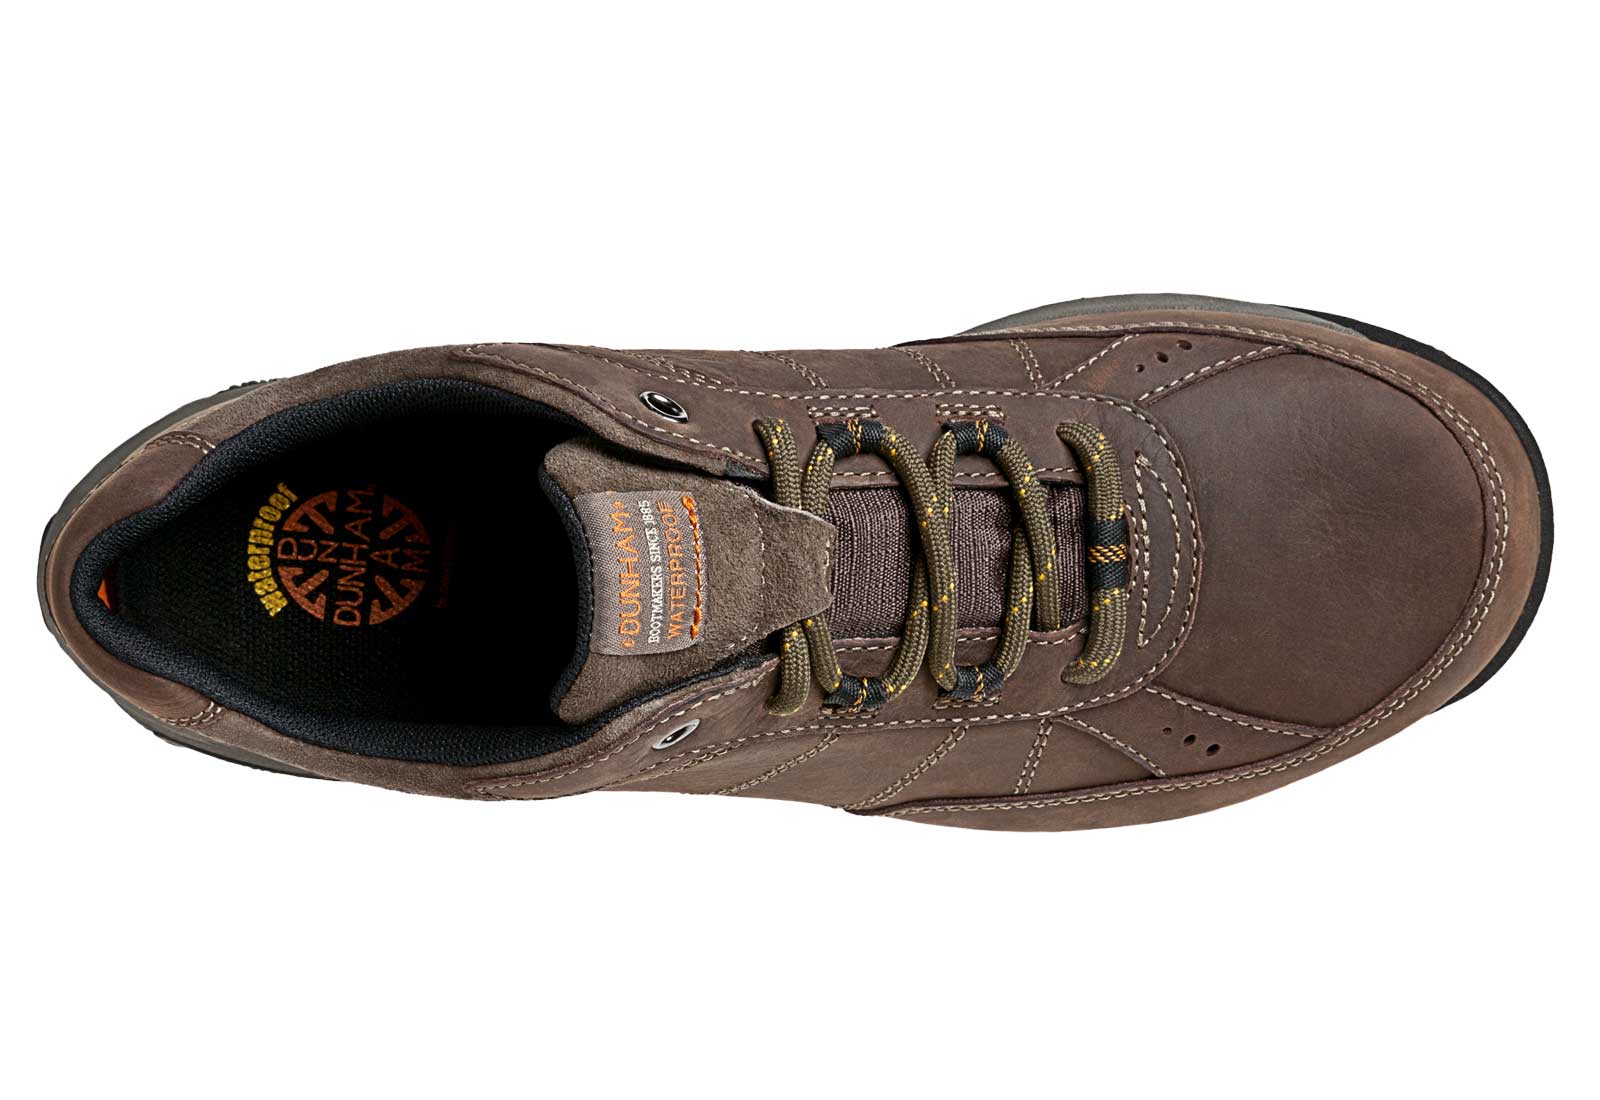 Details about   Dunham DAN01DBR Men's Lexington Lace Up Dark Brown Leather Comfort Oxford Shoes